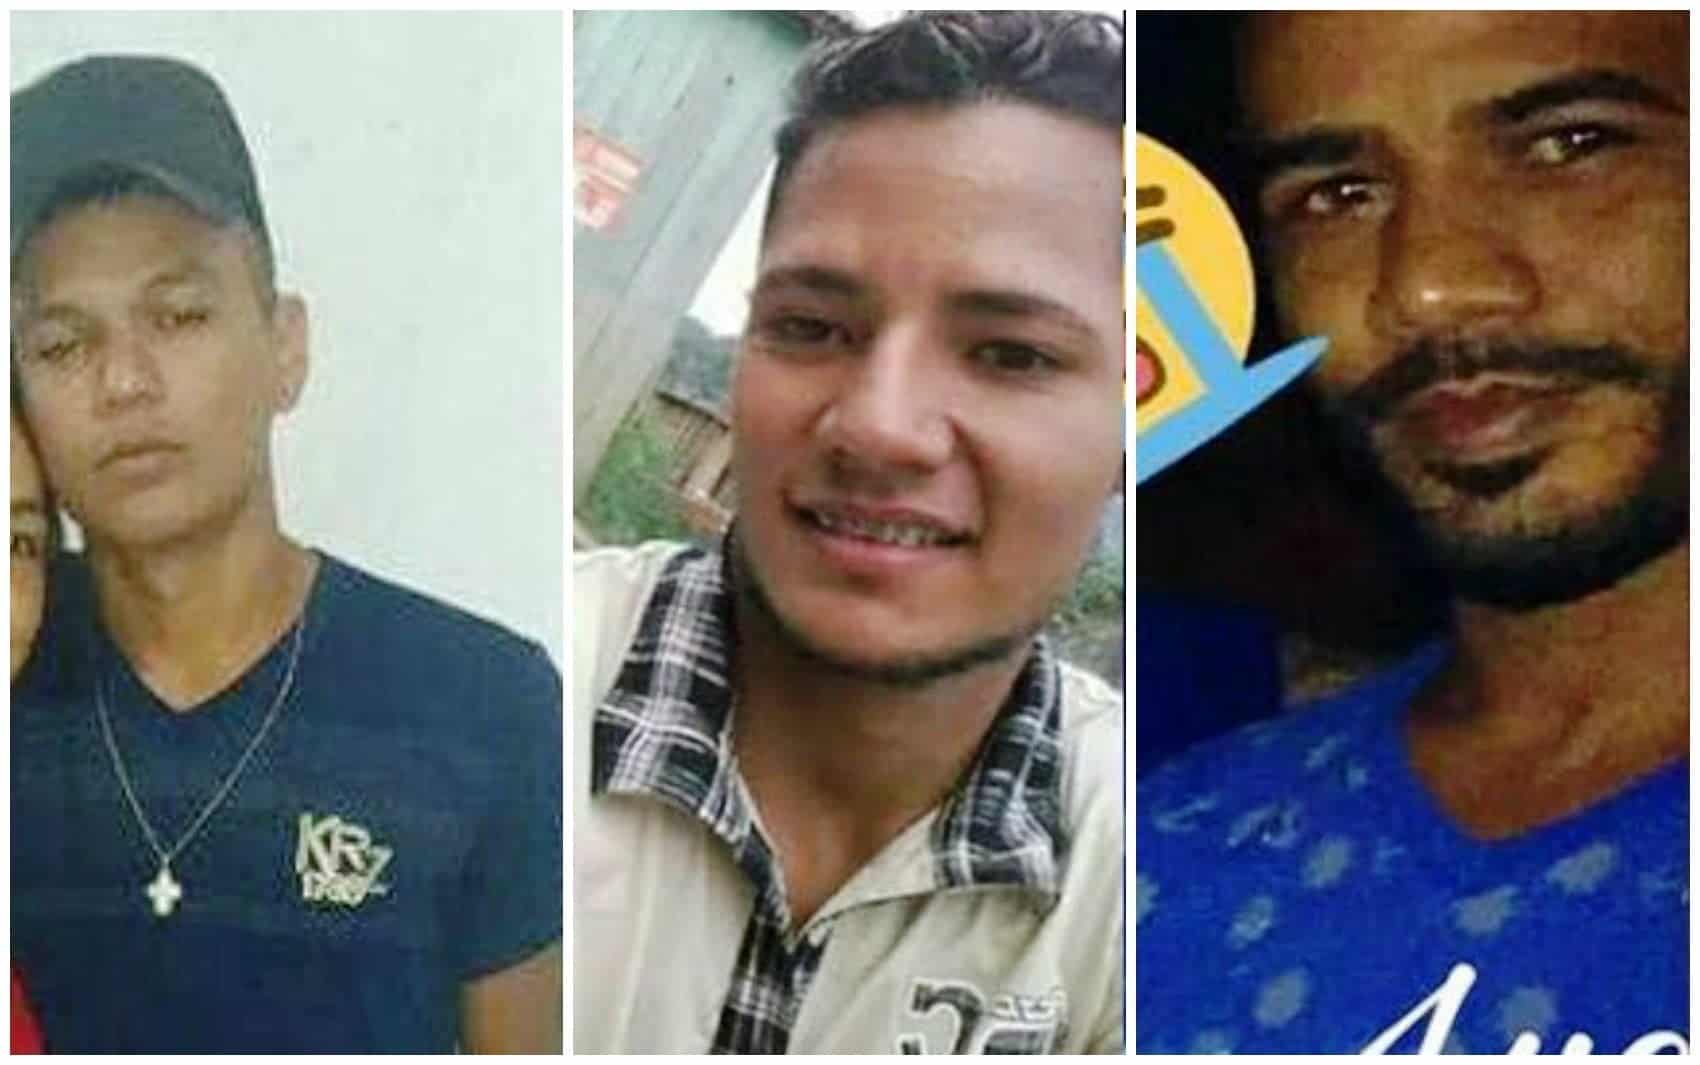 Da esquerda para a direita estão Eric de Lima, de 17 anos; Francisco Igo Silva, 21, e Leandro de Andrade, de 33 anos. (Foto Divulgação Polícia Civil)